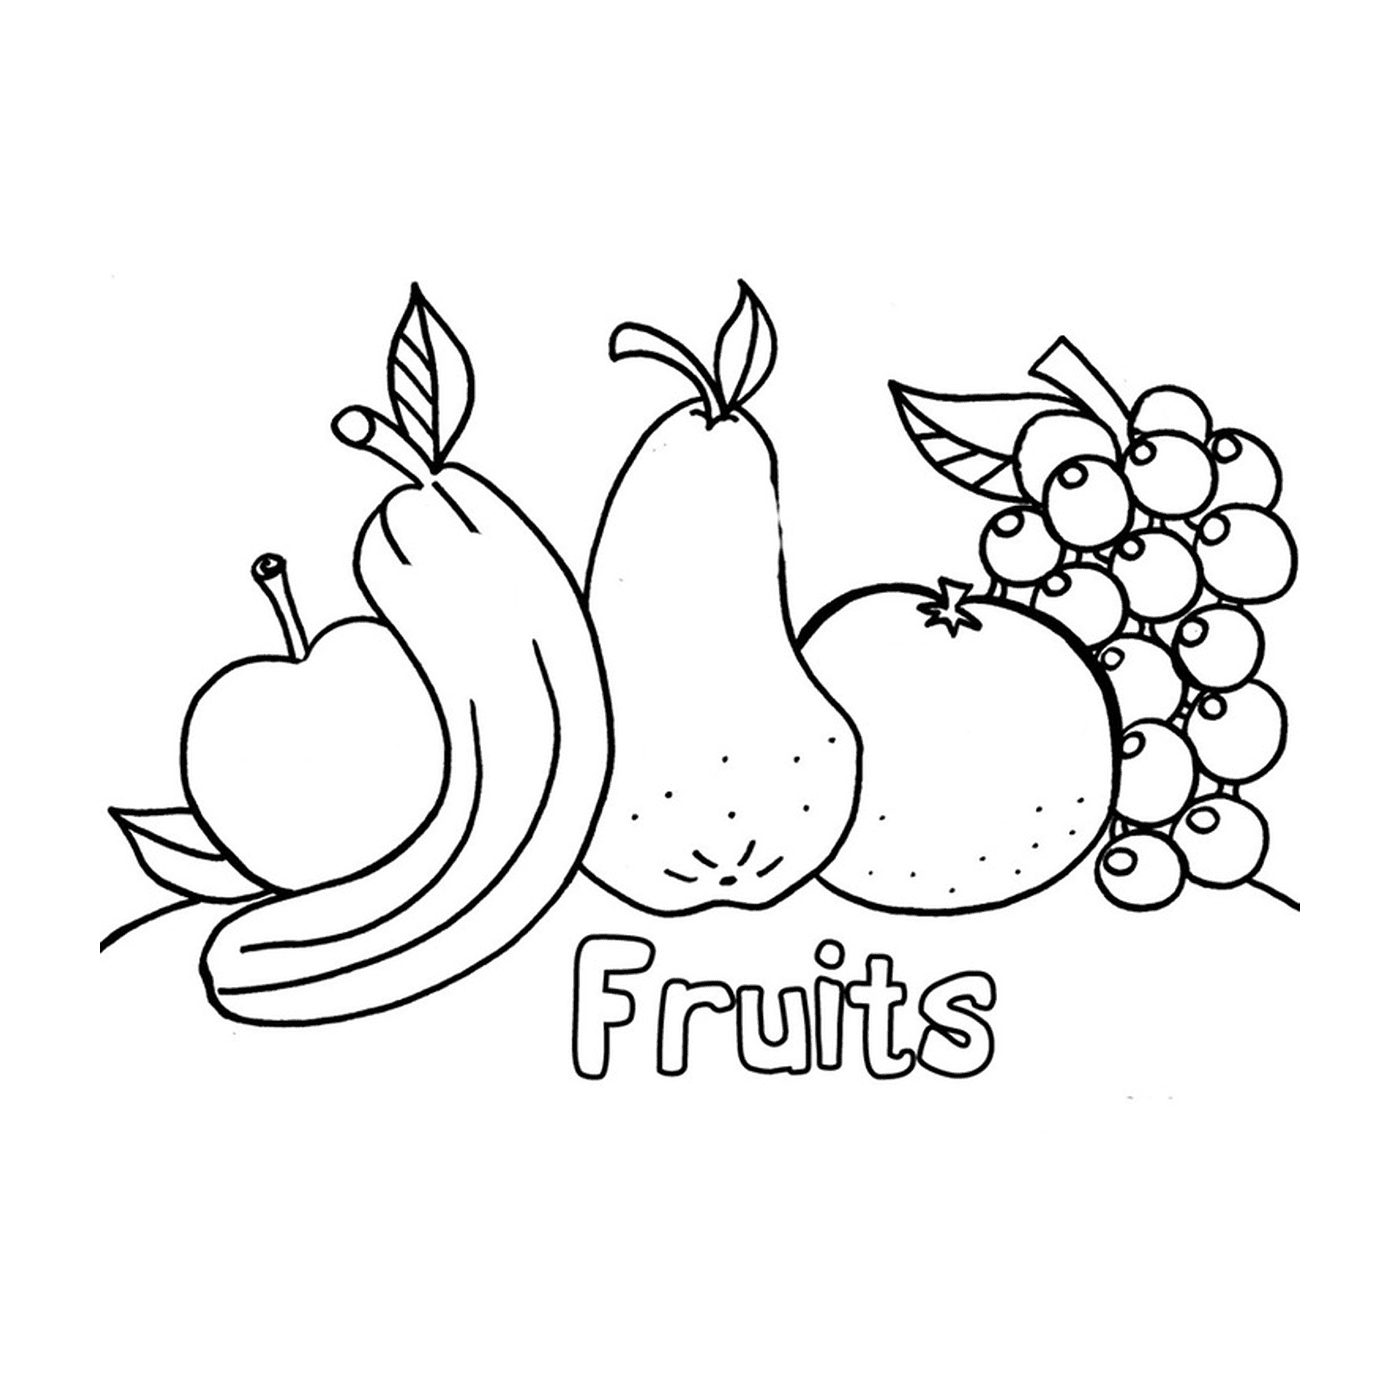   Fruits pour une alimentation équilibrée 